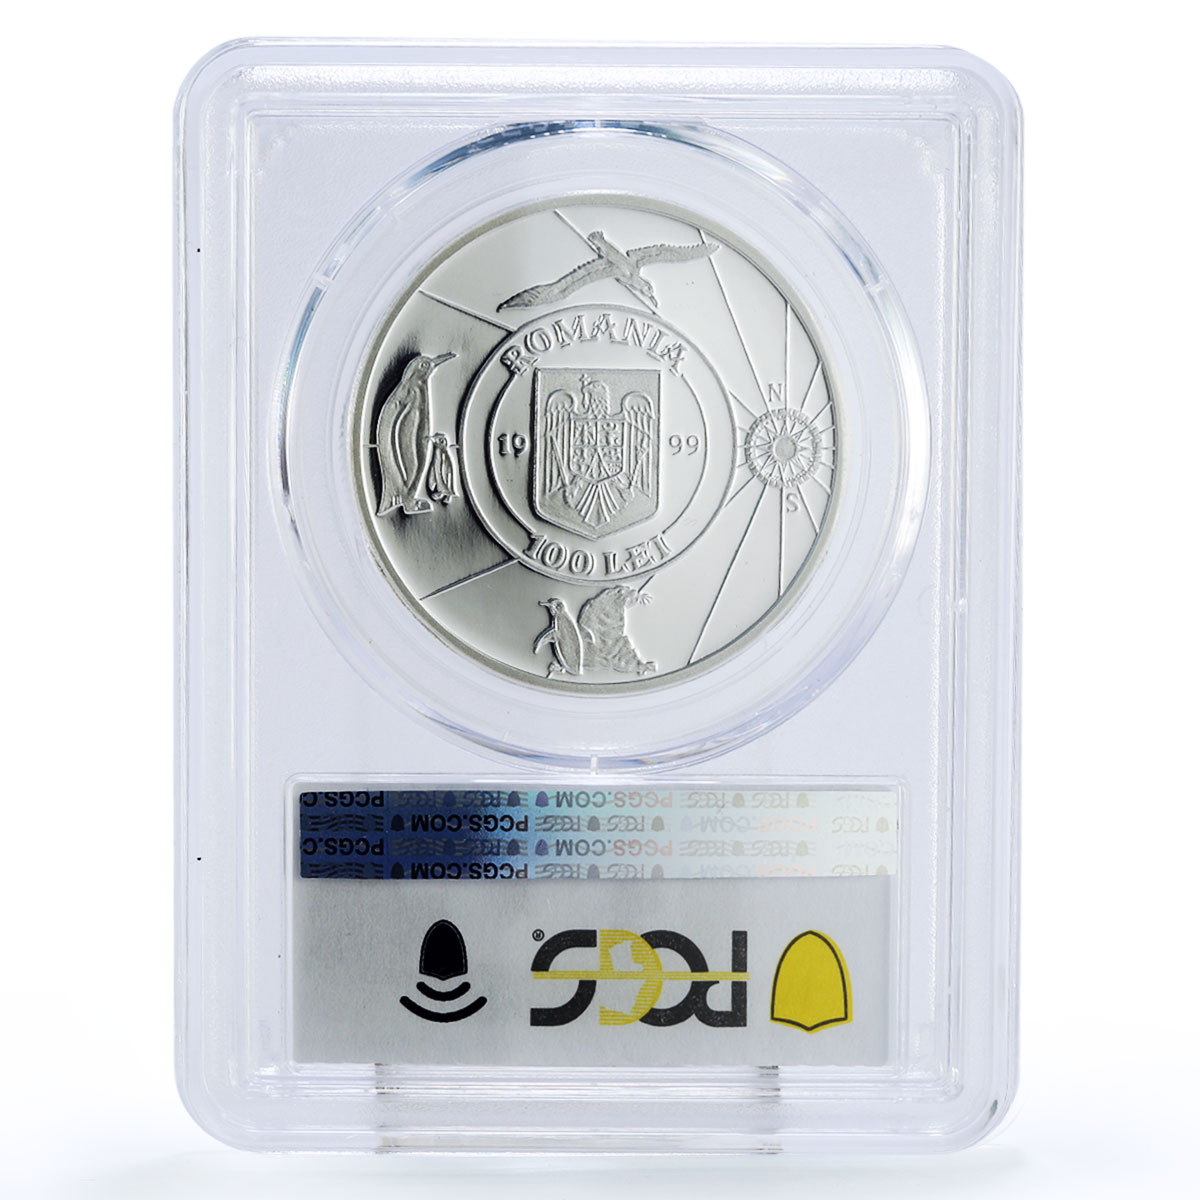 Romania 100 lei Belgica Expedition Racovita Ship Clipper PR68 PCGS Ag coin 1999